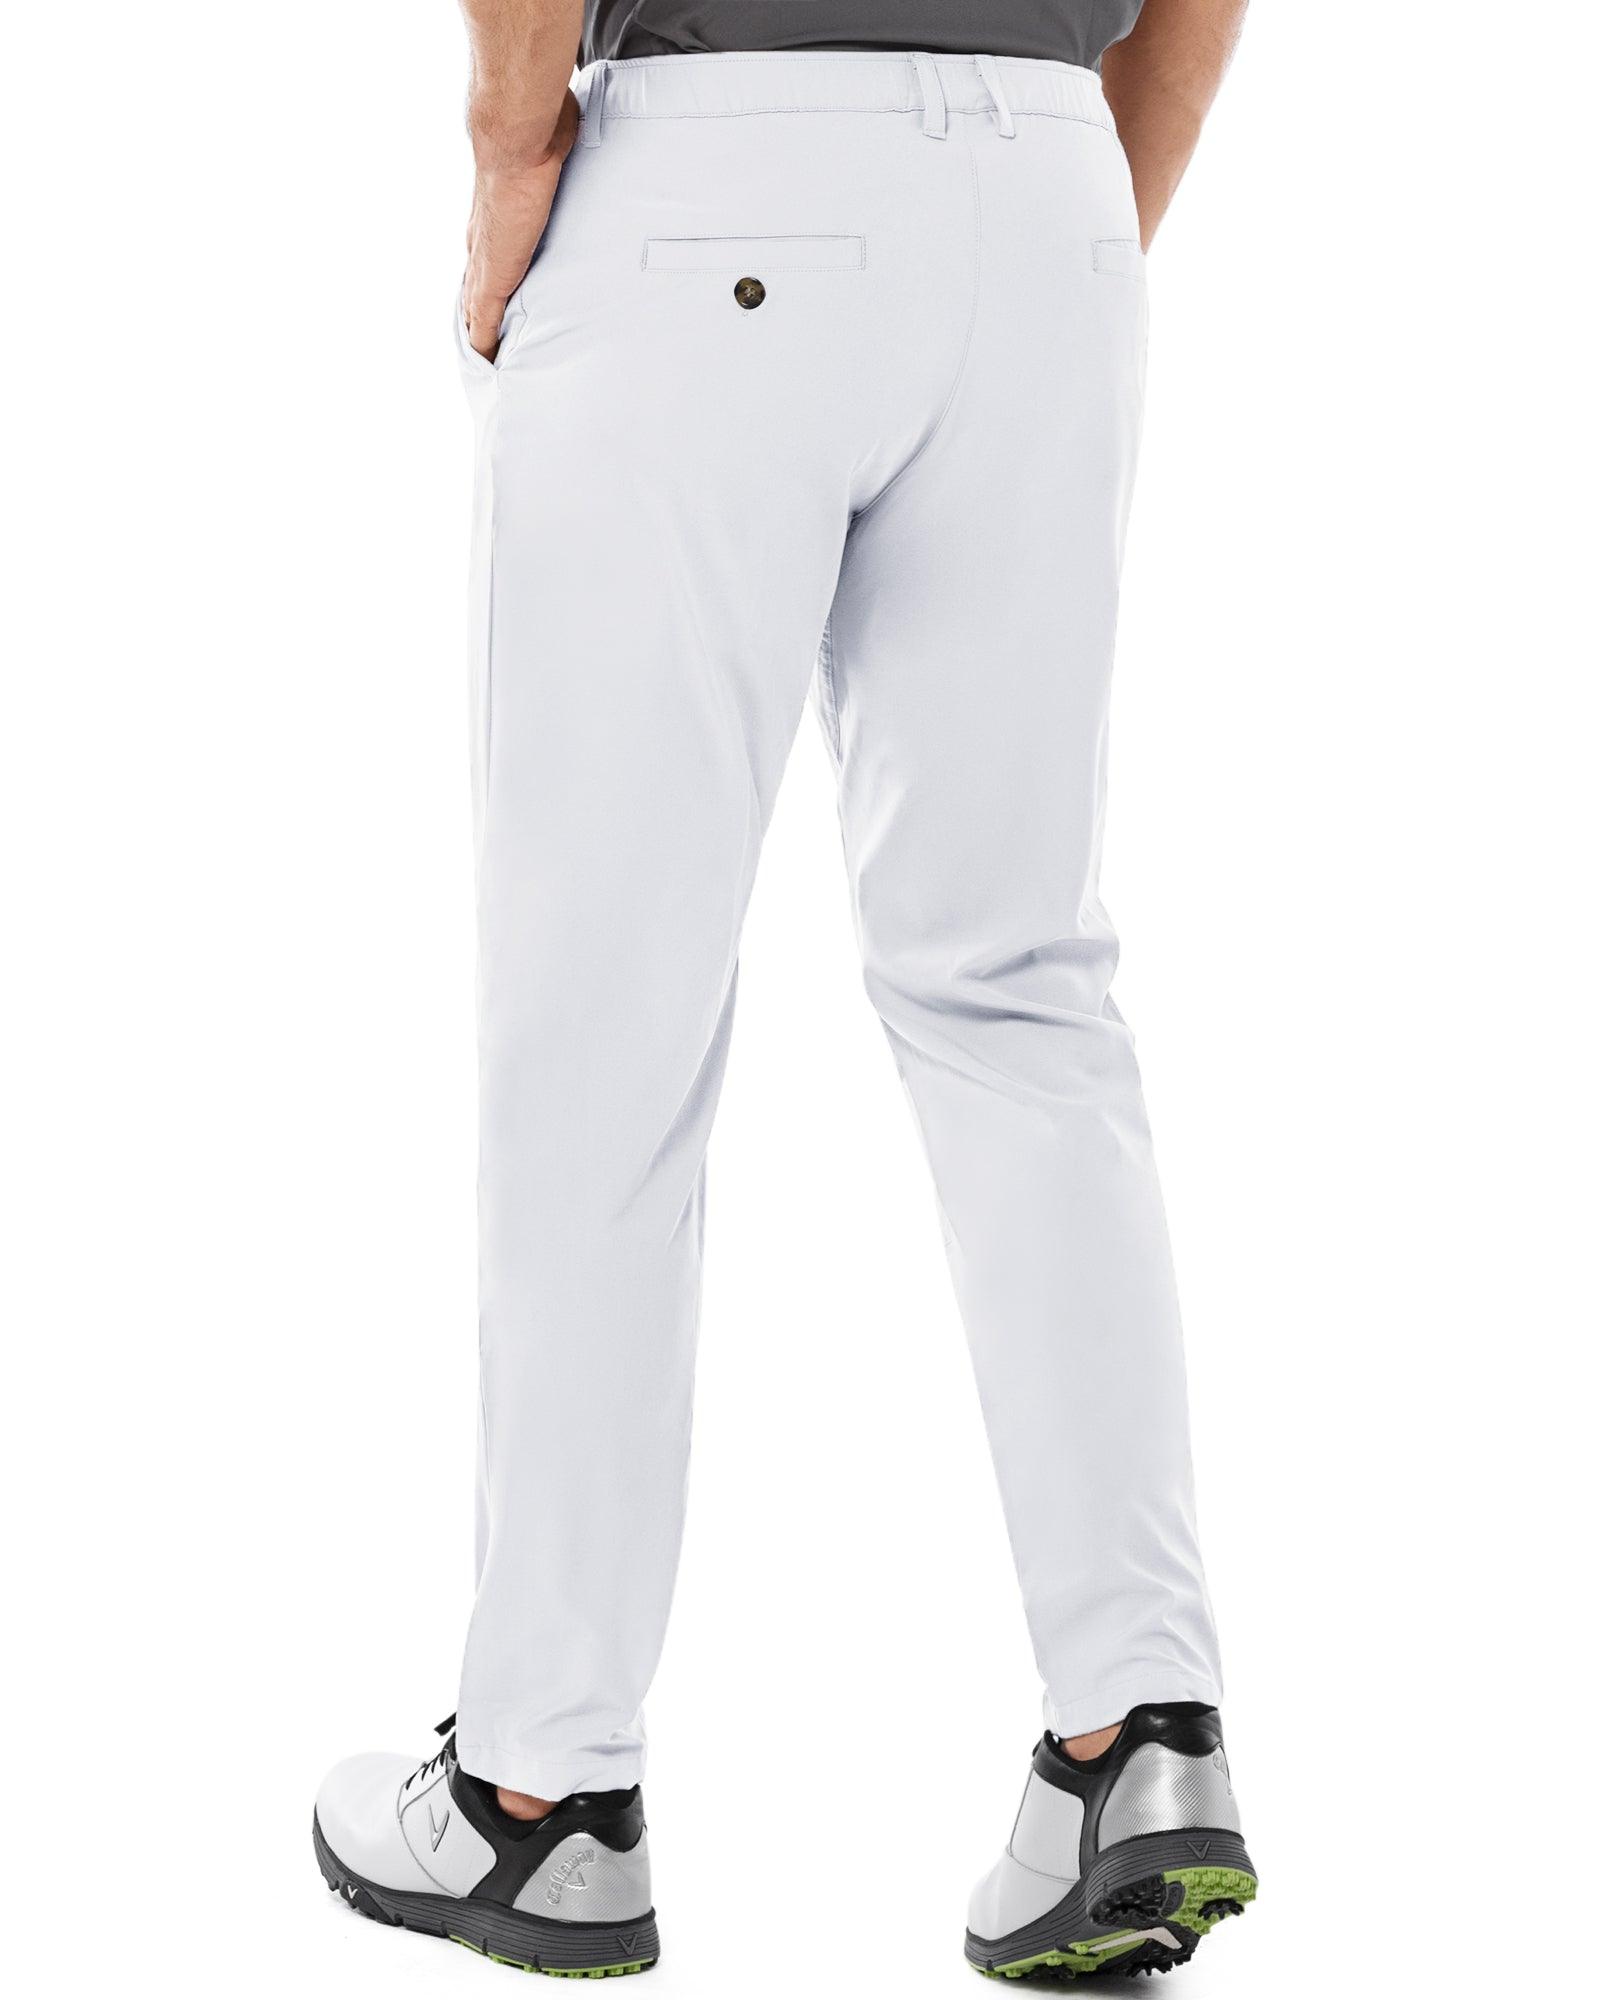 Cotton Plaid Golf Trousers | Par 5 | Black Stewart